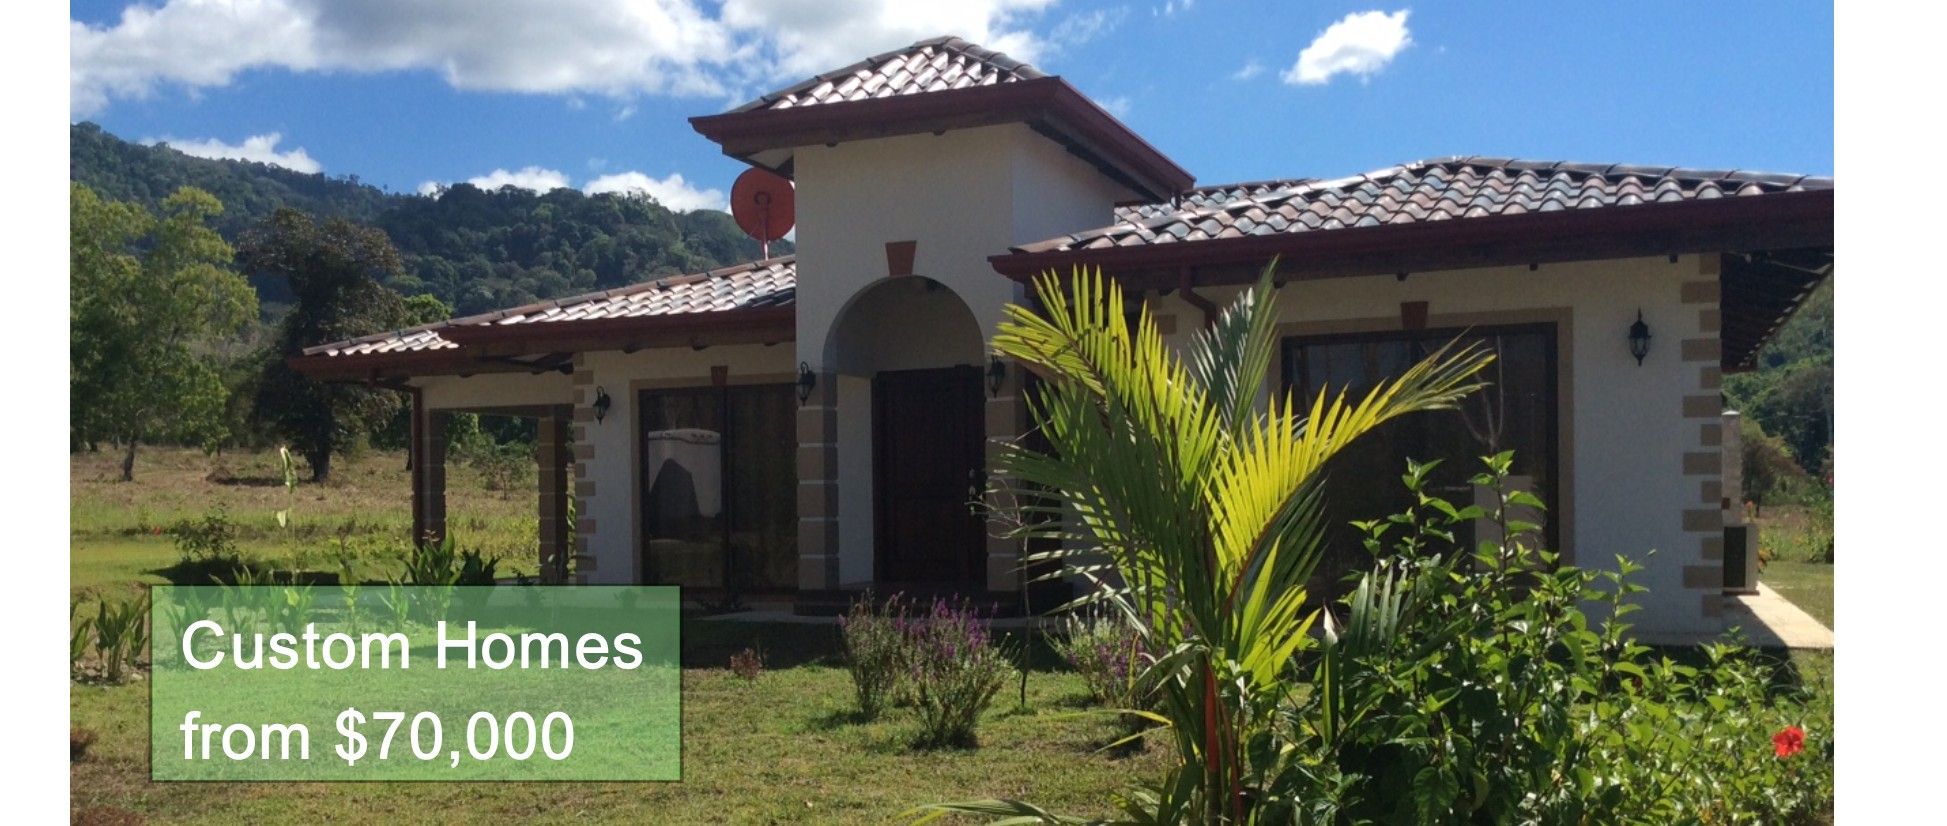 Costa Rica Home Designs